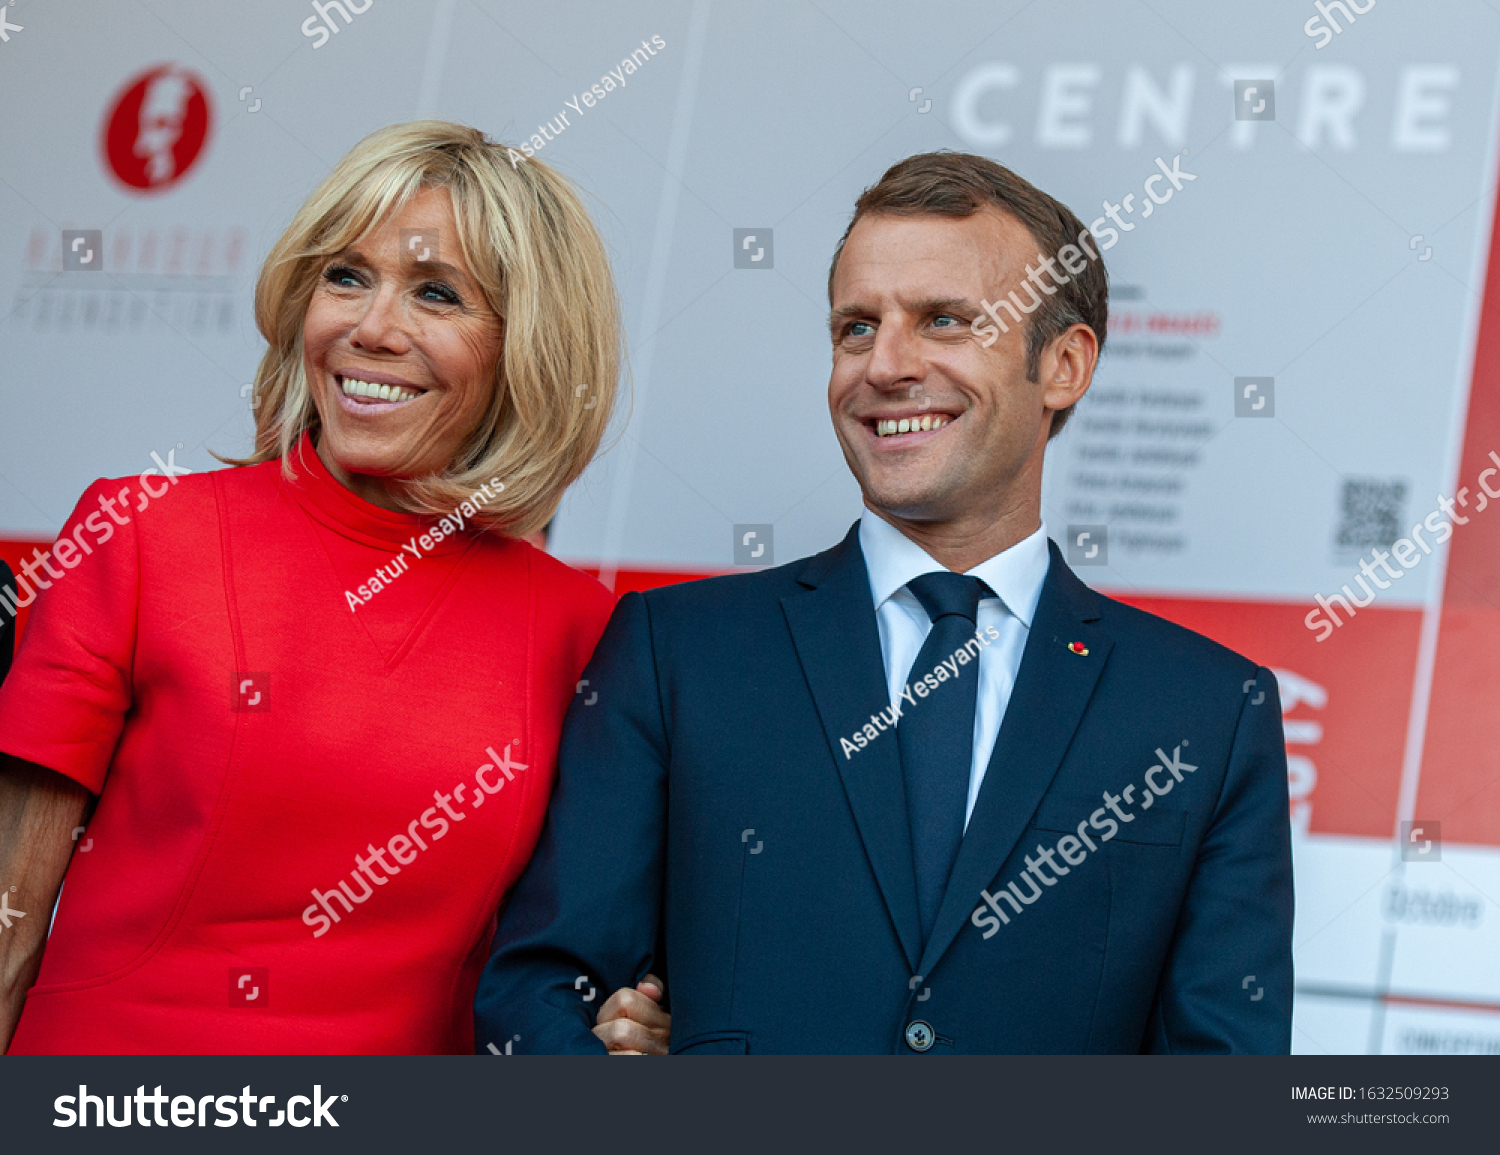 155 Emmanuel Macron Wife Images, Stock Photos & Vectors Shutterstock